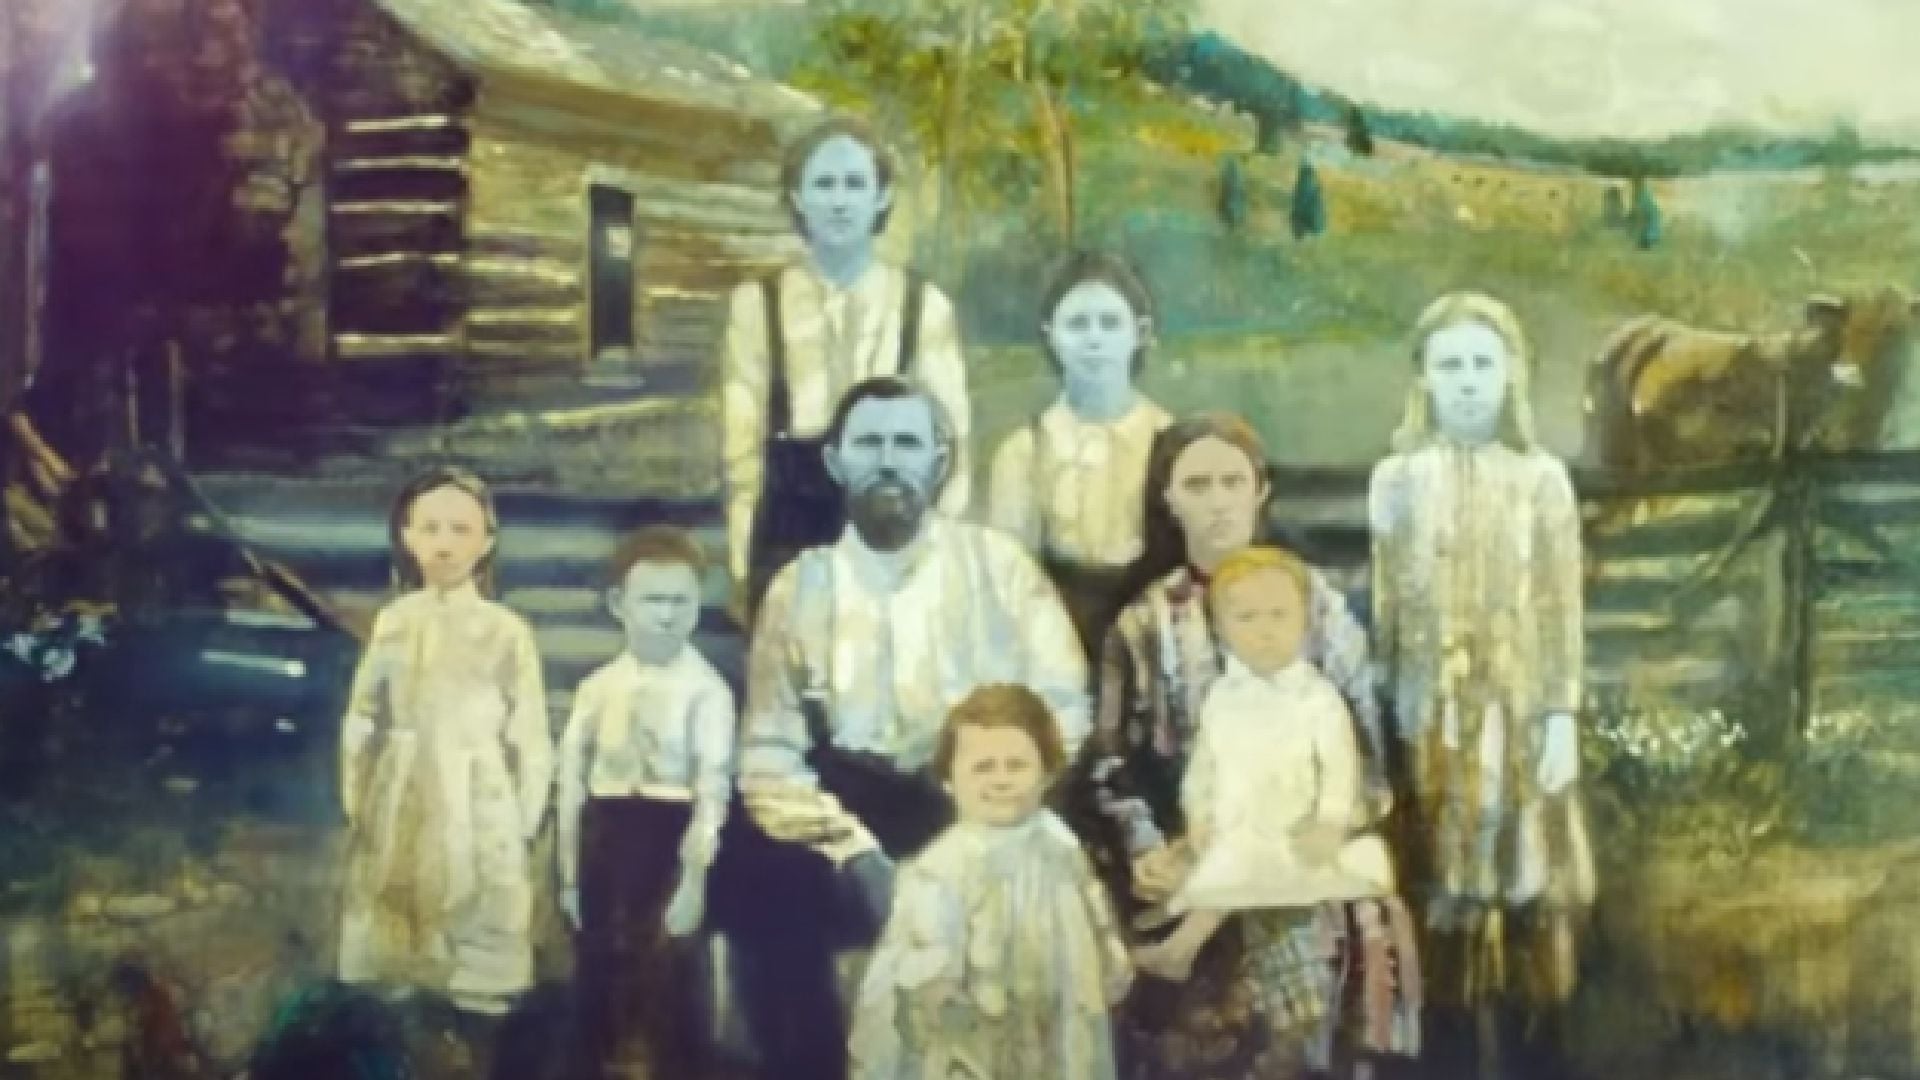 el misterio de la piel azul: una familia practicó tanto el incesto por generaciones que su piel se volvió azul